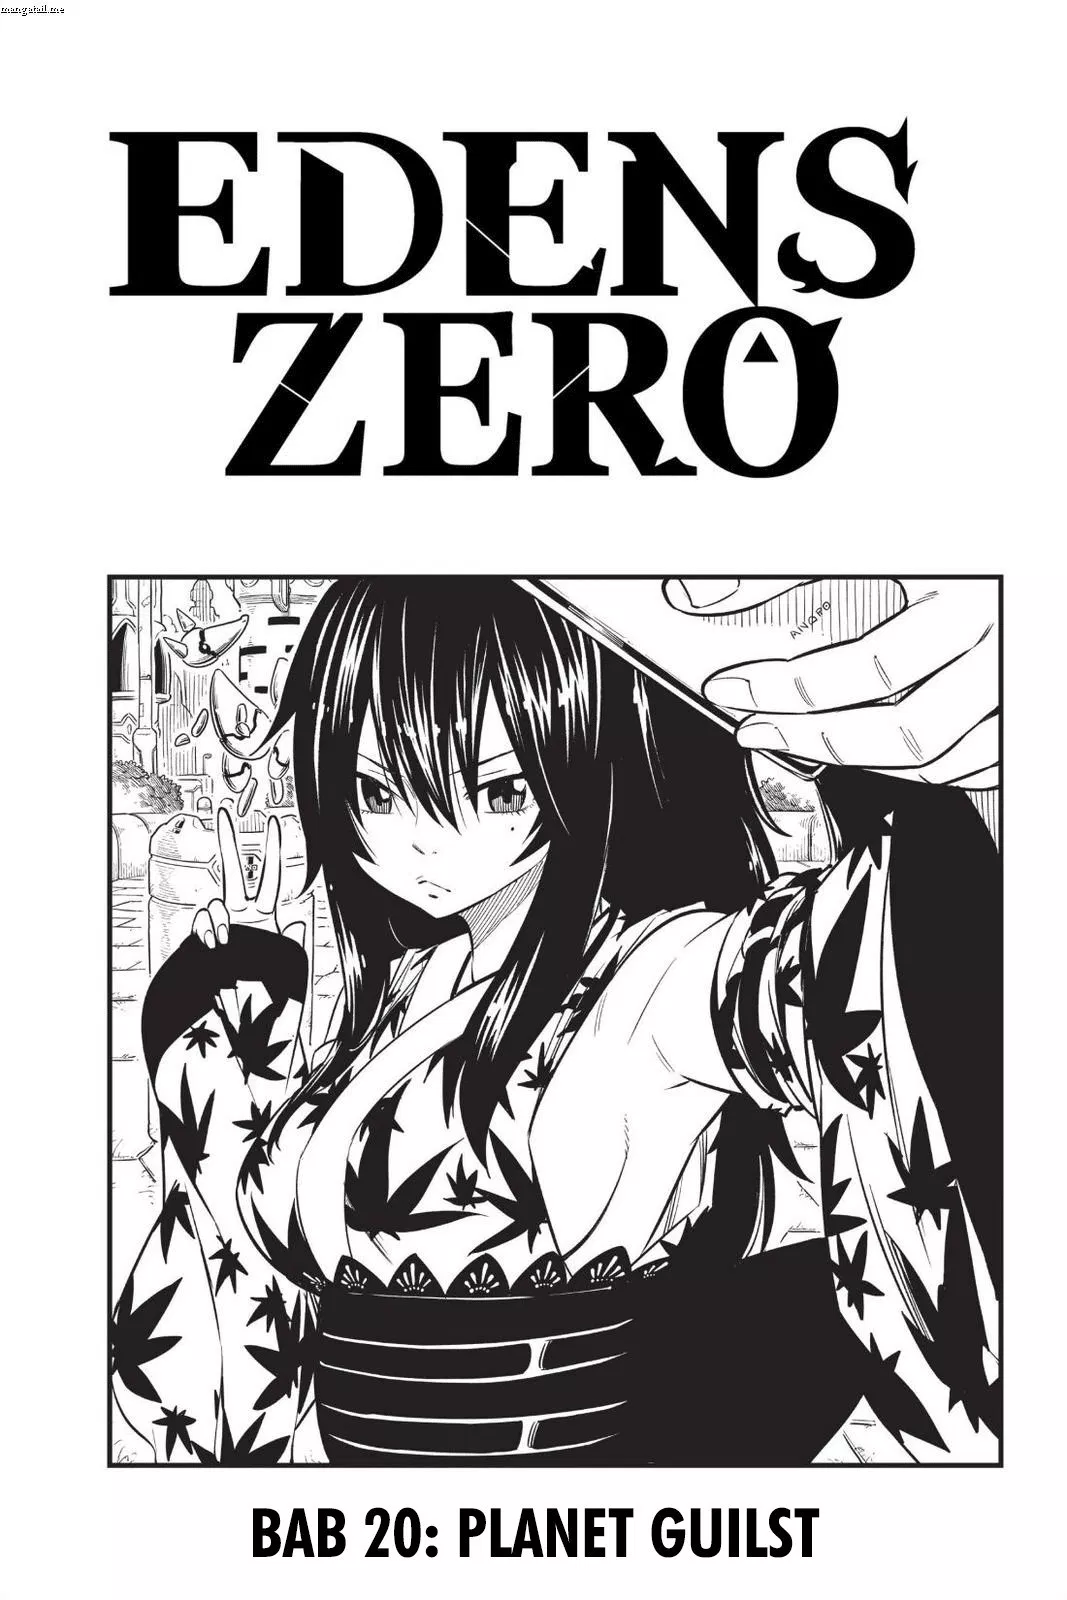 Eden’s Zero Chapter 20